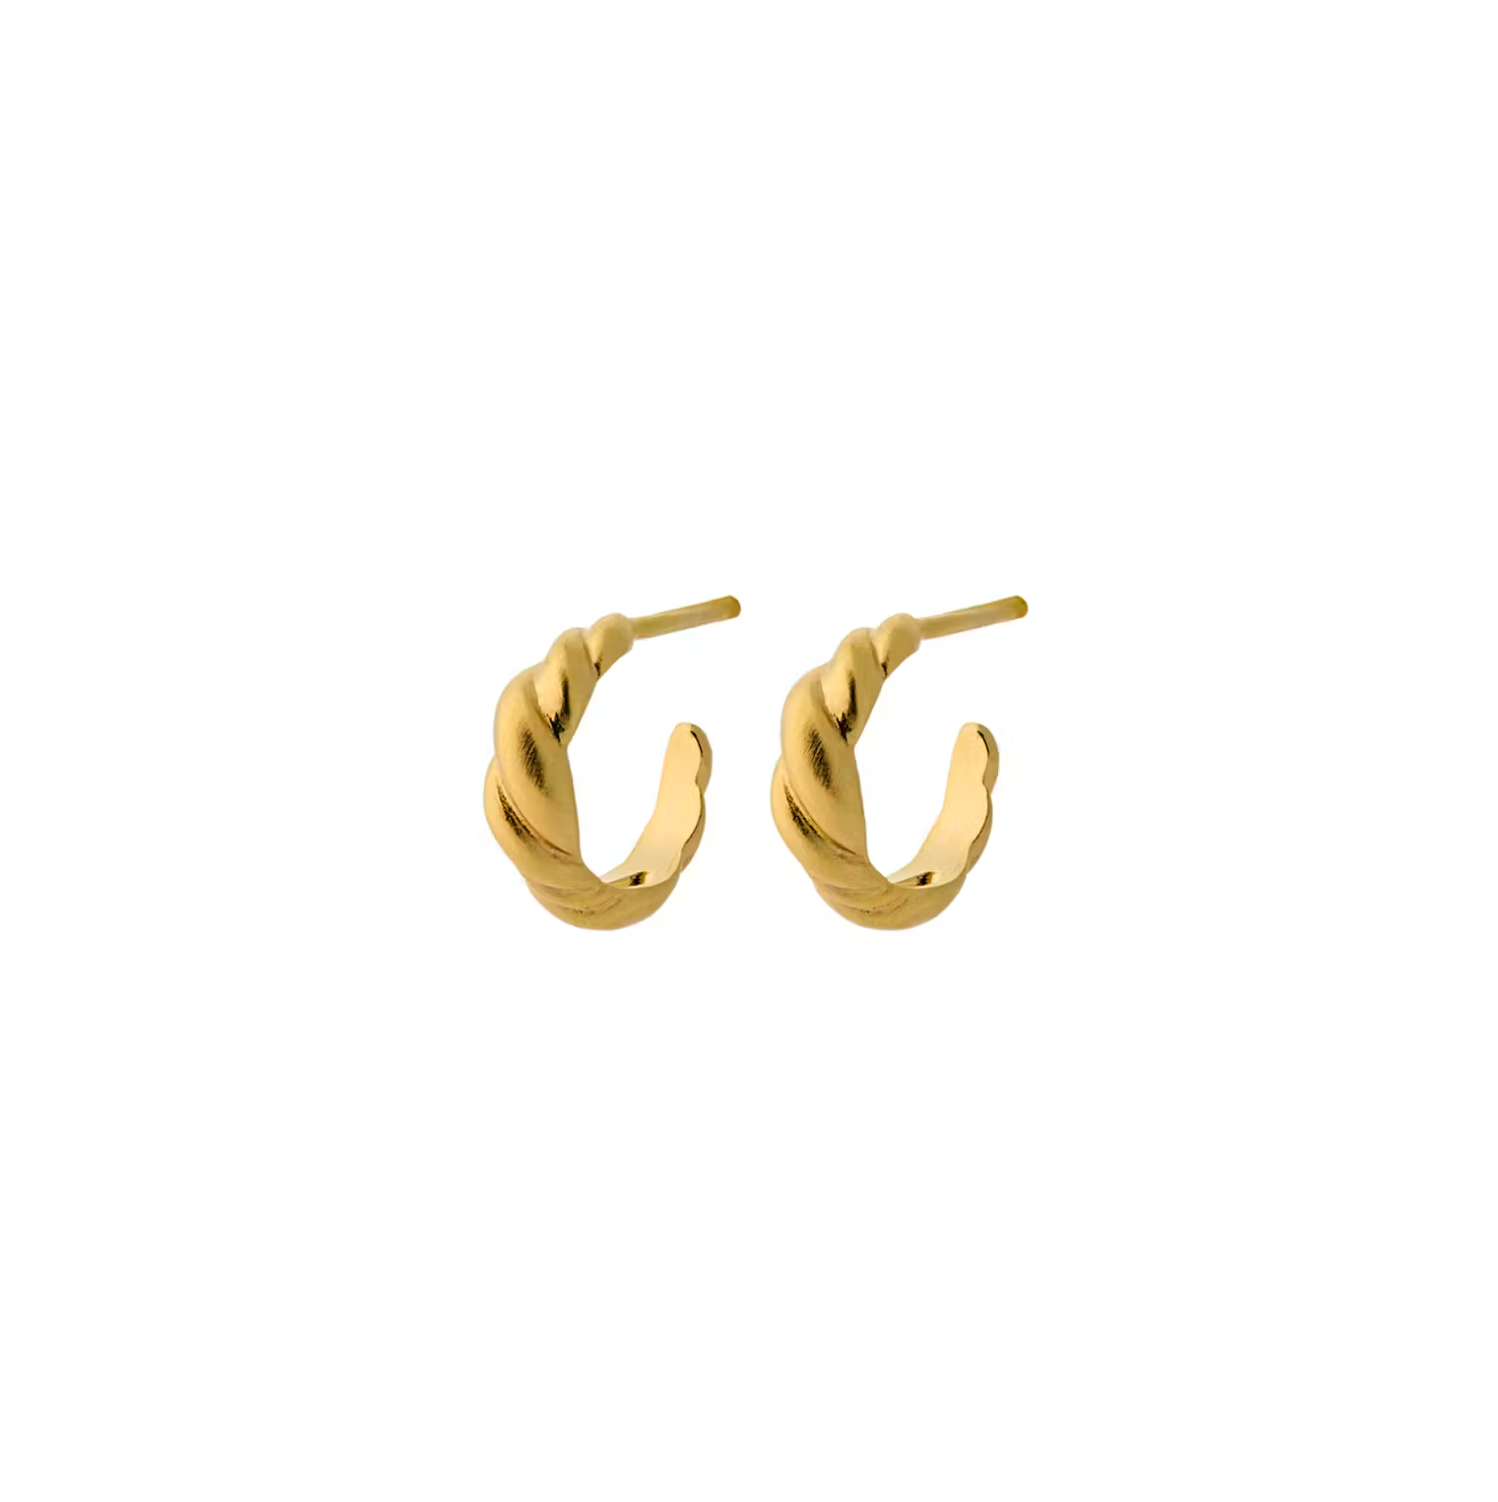 Small Hana Earrings in Gold